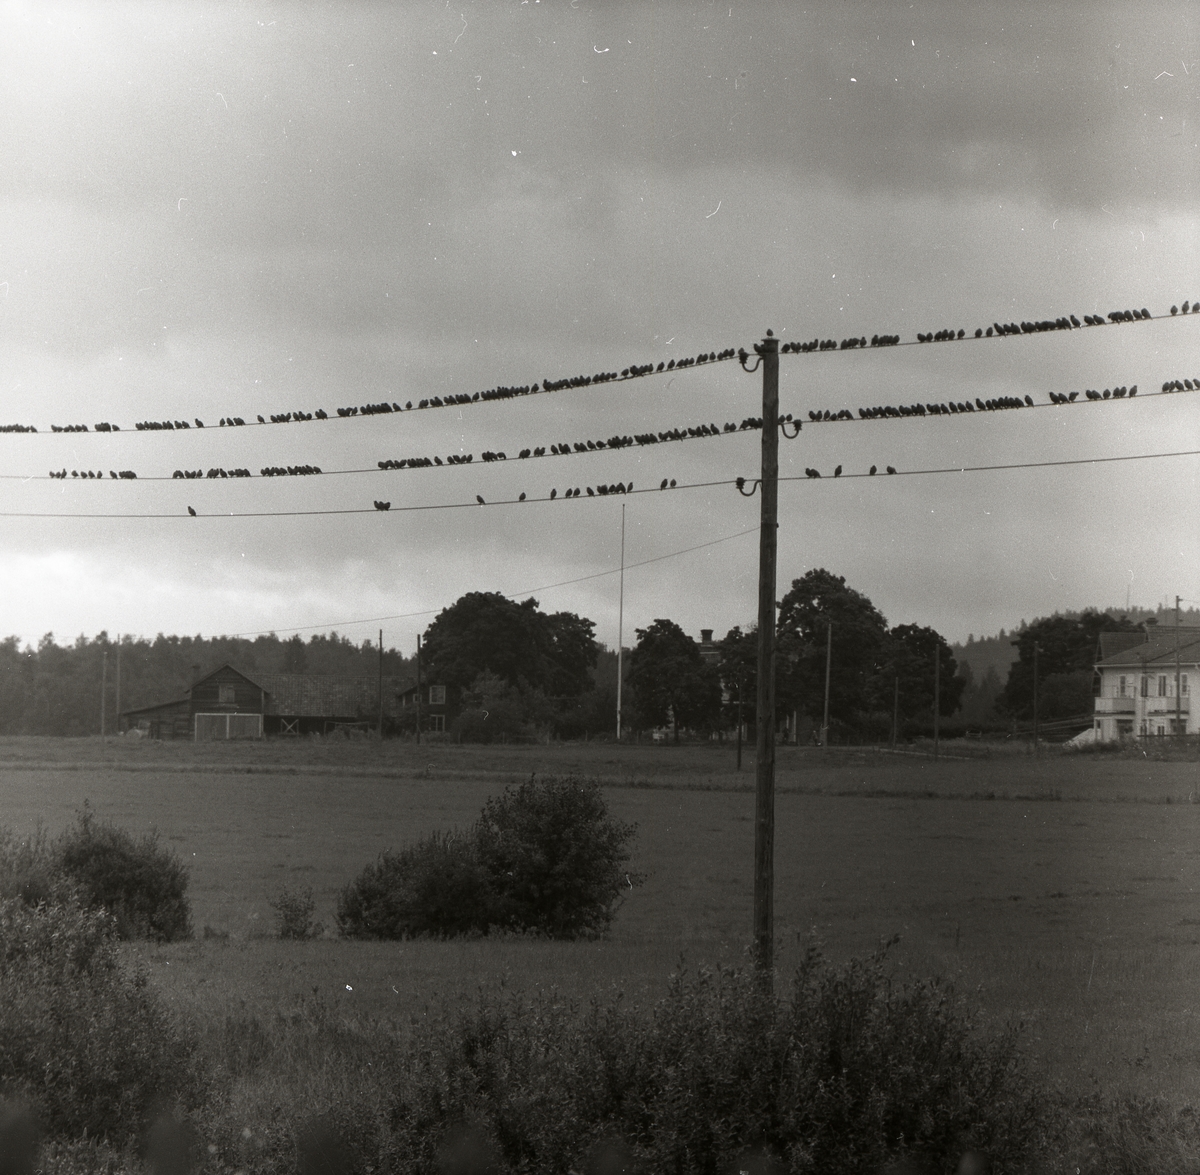 På några elledningar sitter långa rader av fåglar, 1957. Bakom elledningarna syns åkermark, hus och buskar.